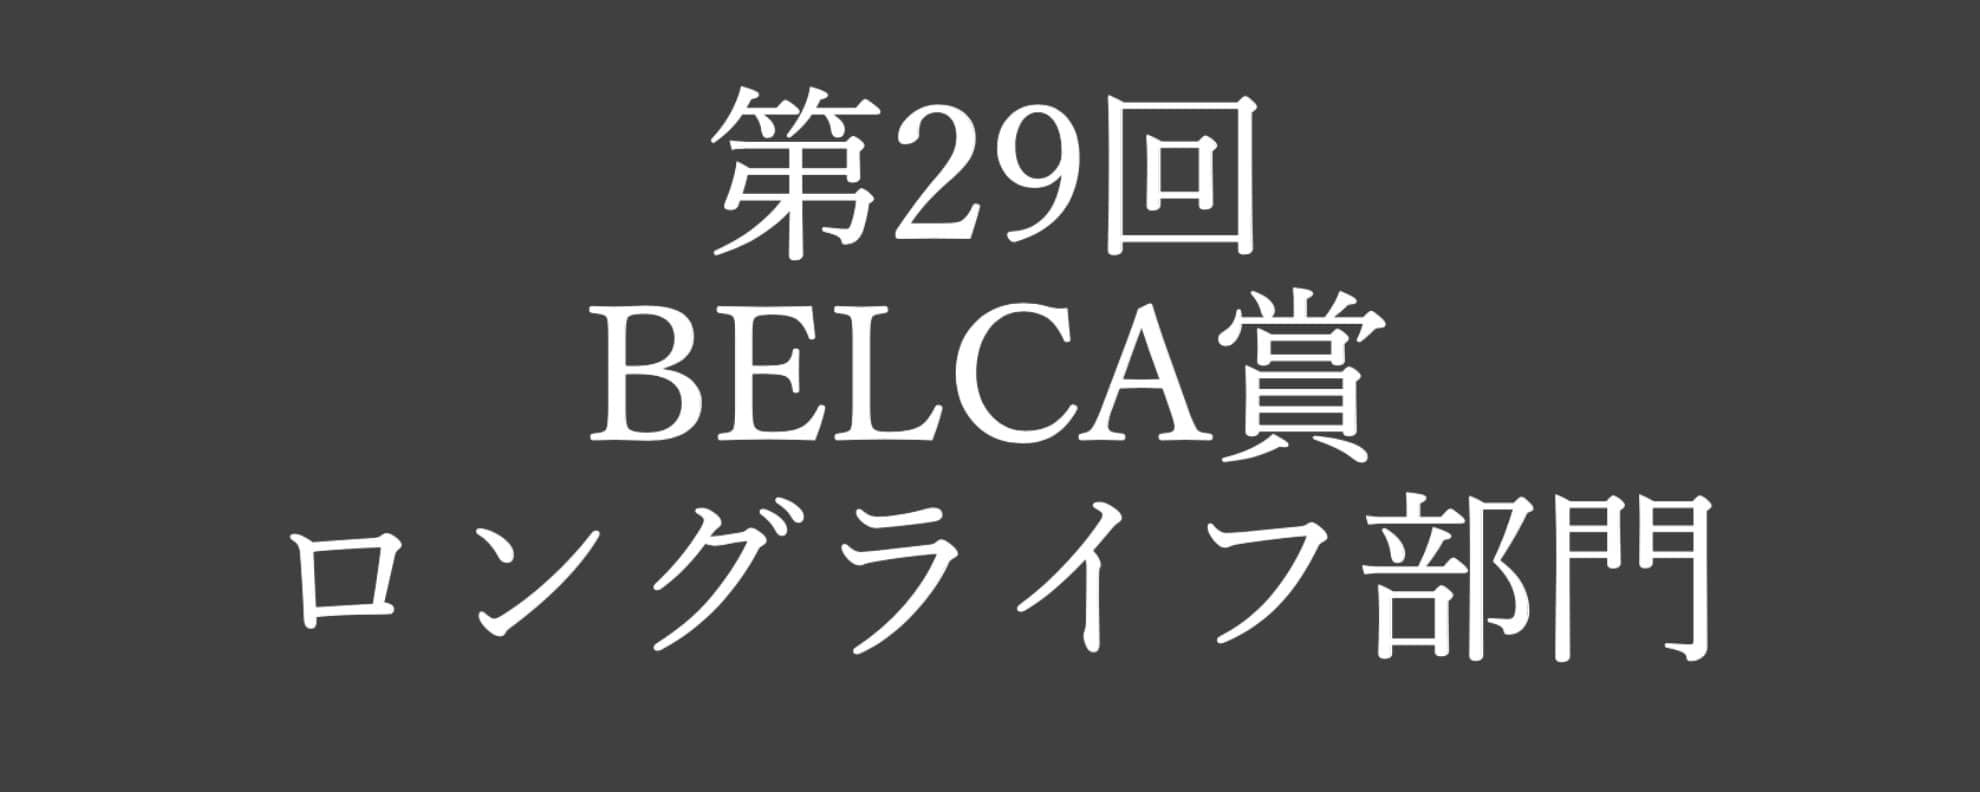 『第29回 BELCA賞ロングライフ部門』受賞